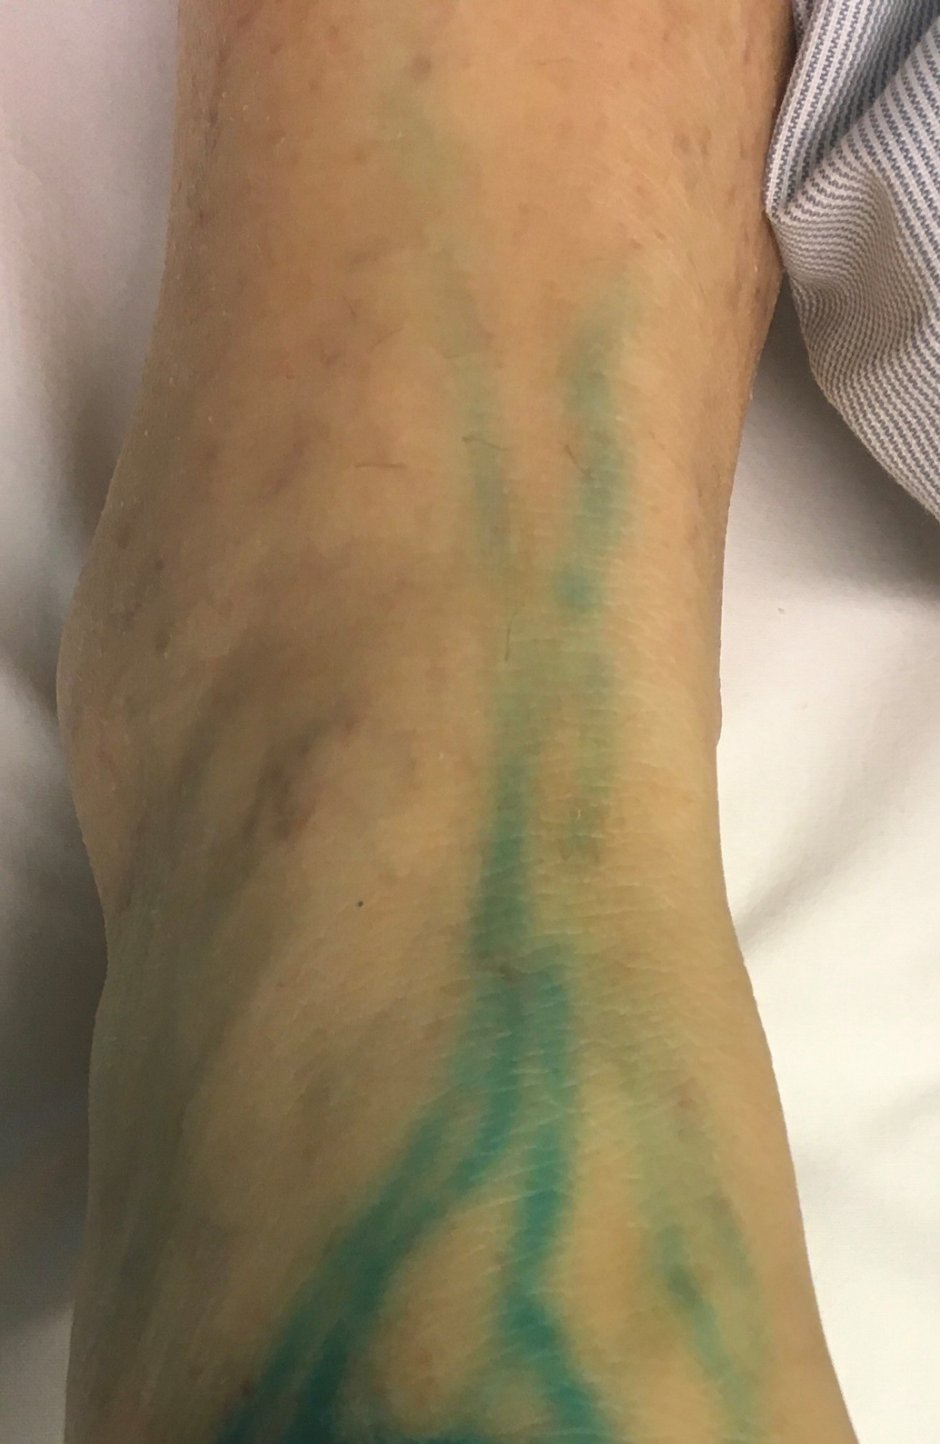 Lymphographie – Ein Farbstoff macht die feinen Lymphgefäße am Fußrücken sichtbar